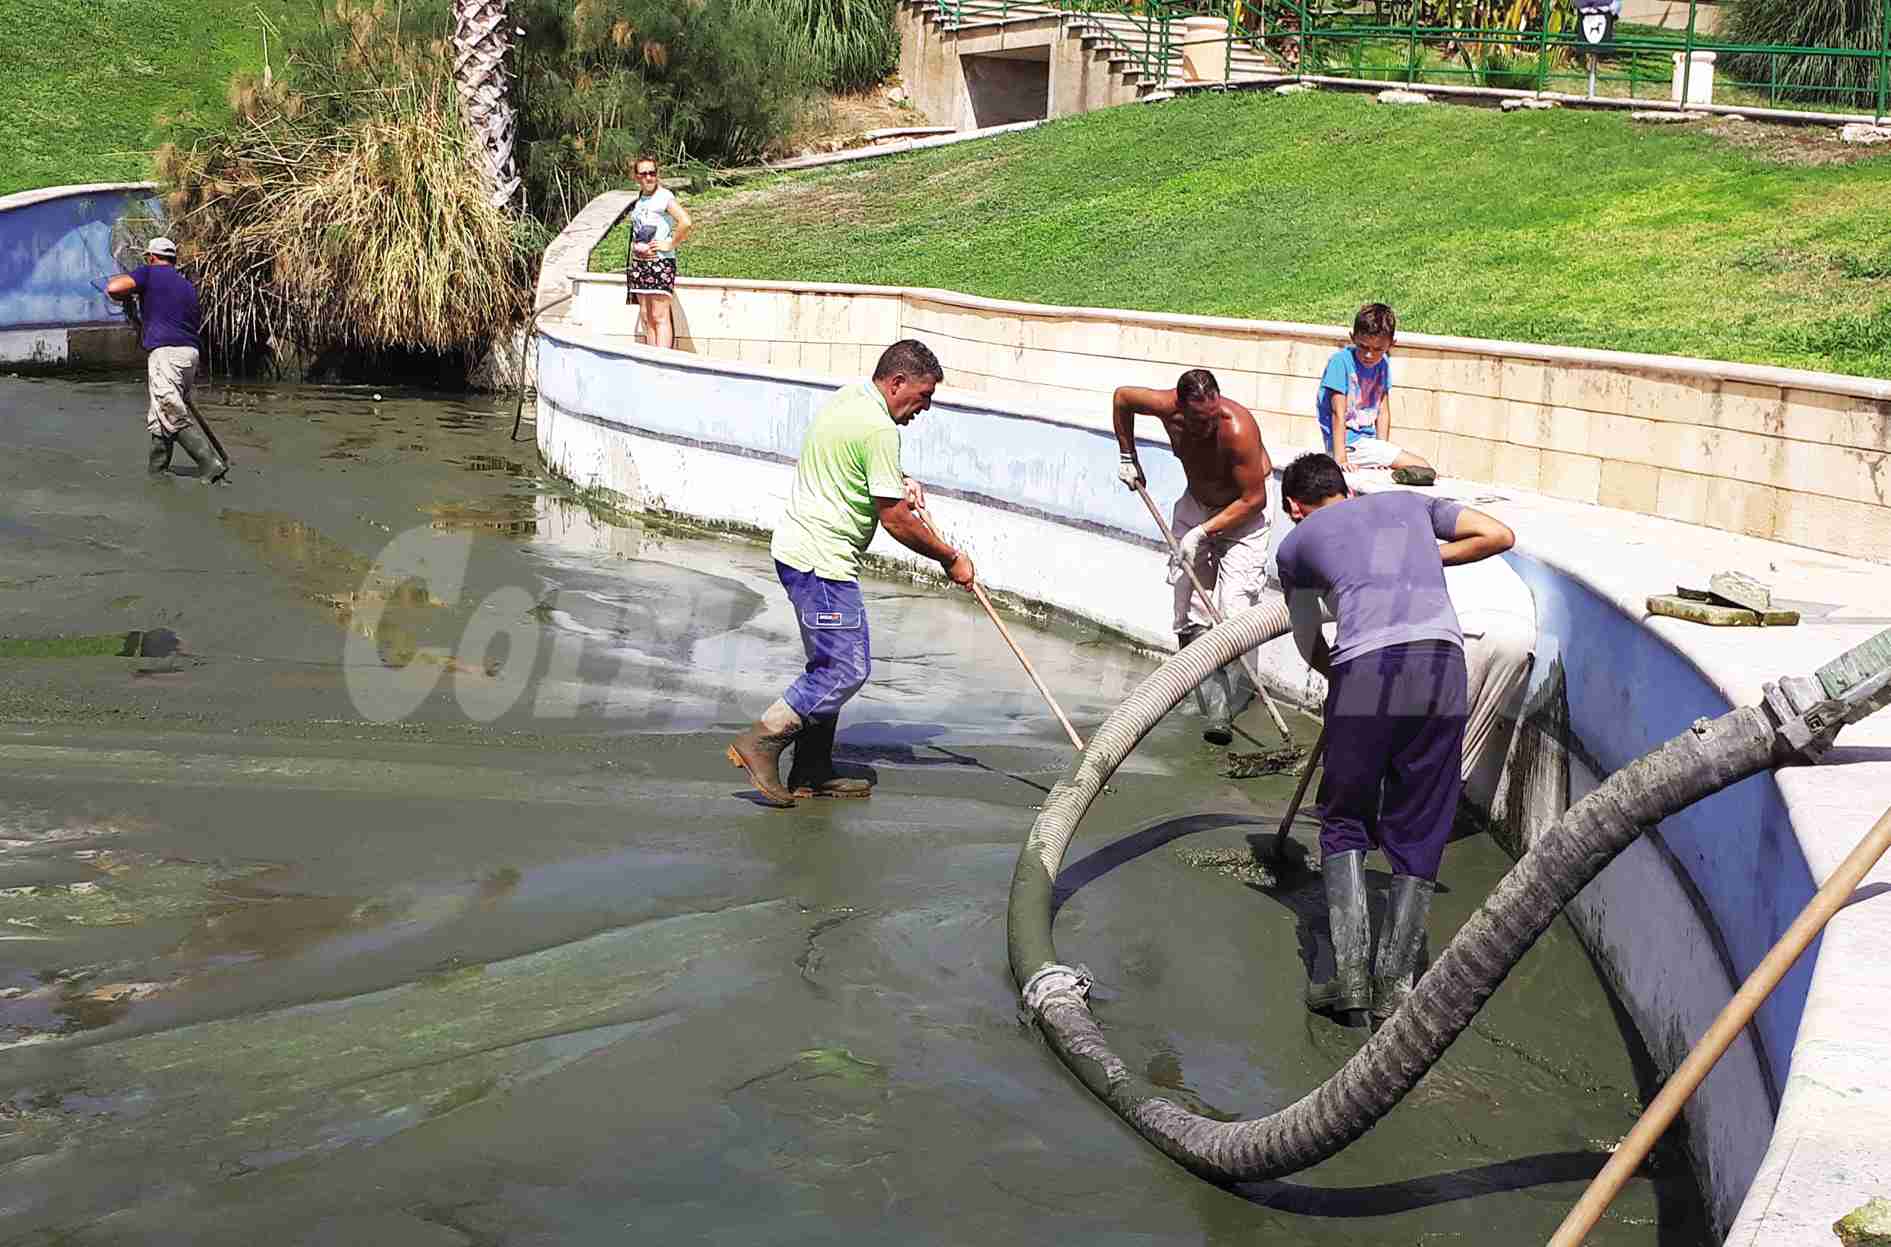 Pulizia vasca Verde a Valle: Avis e Comune finanziano i lavori che saranno svolti da Città Verde